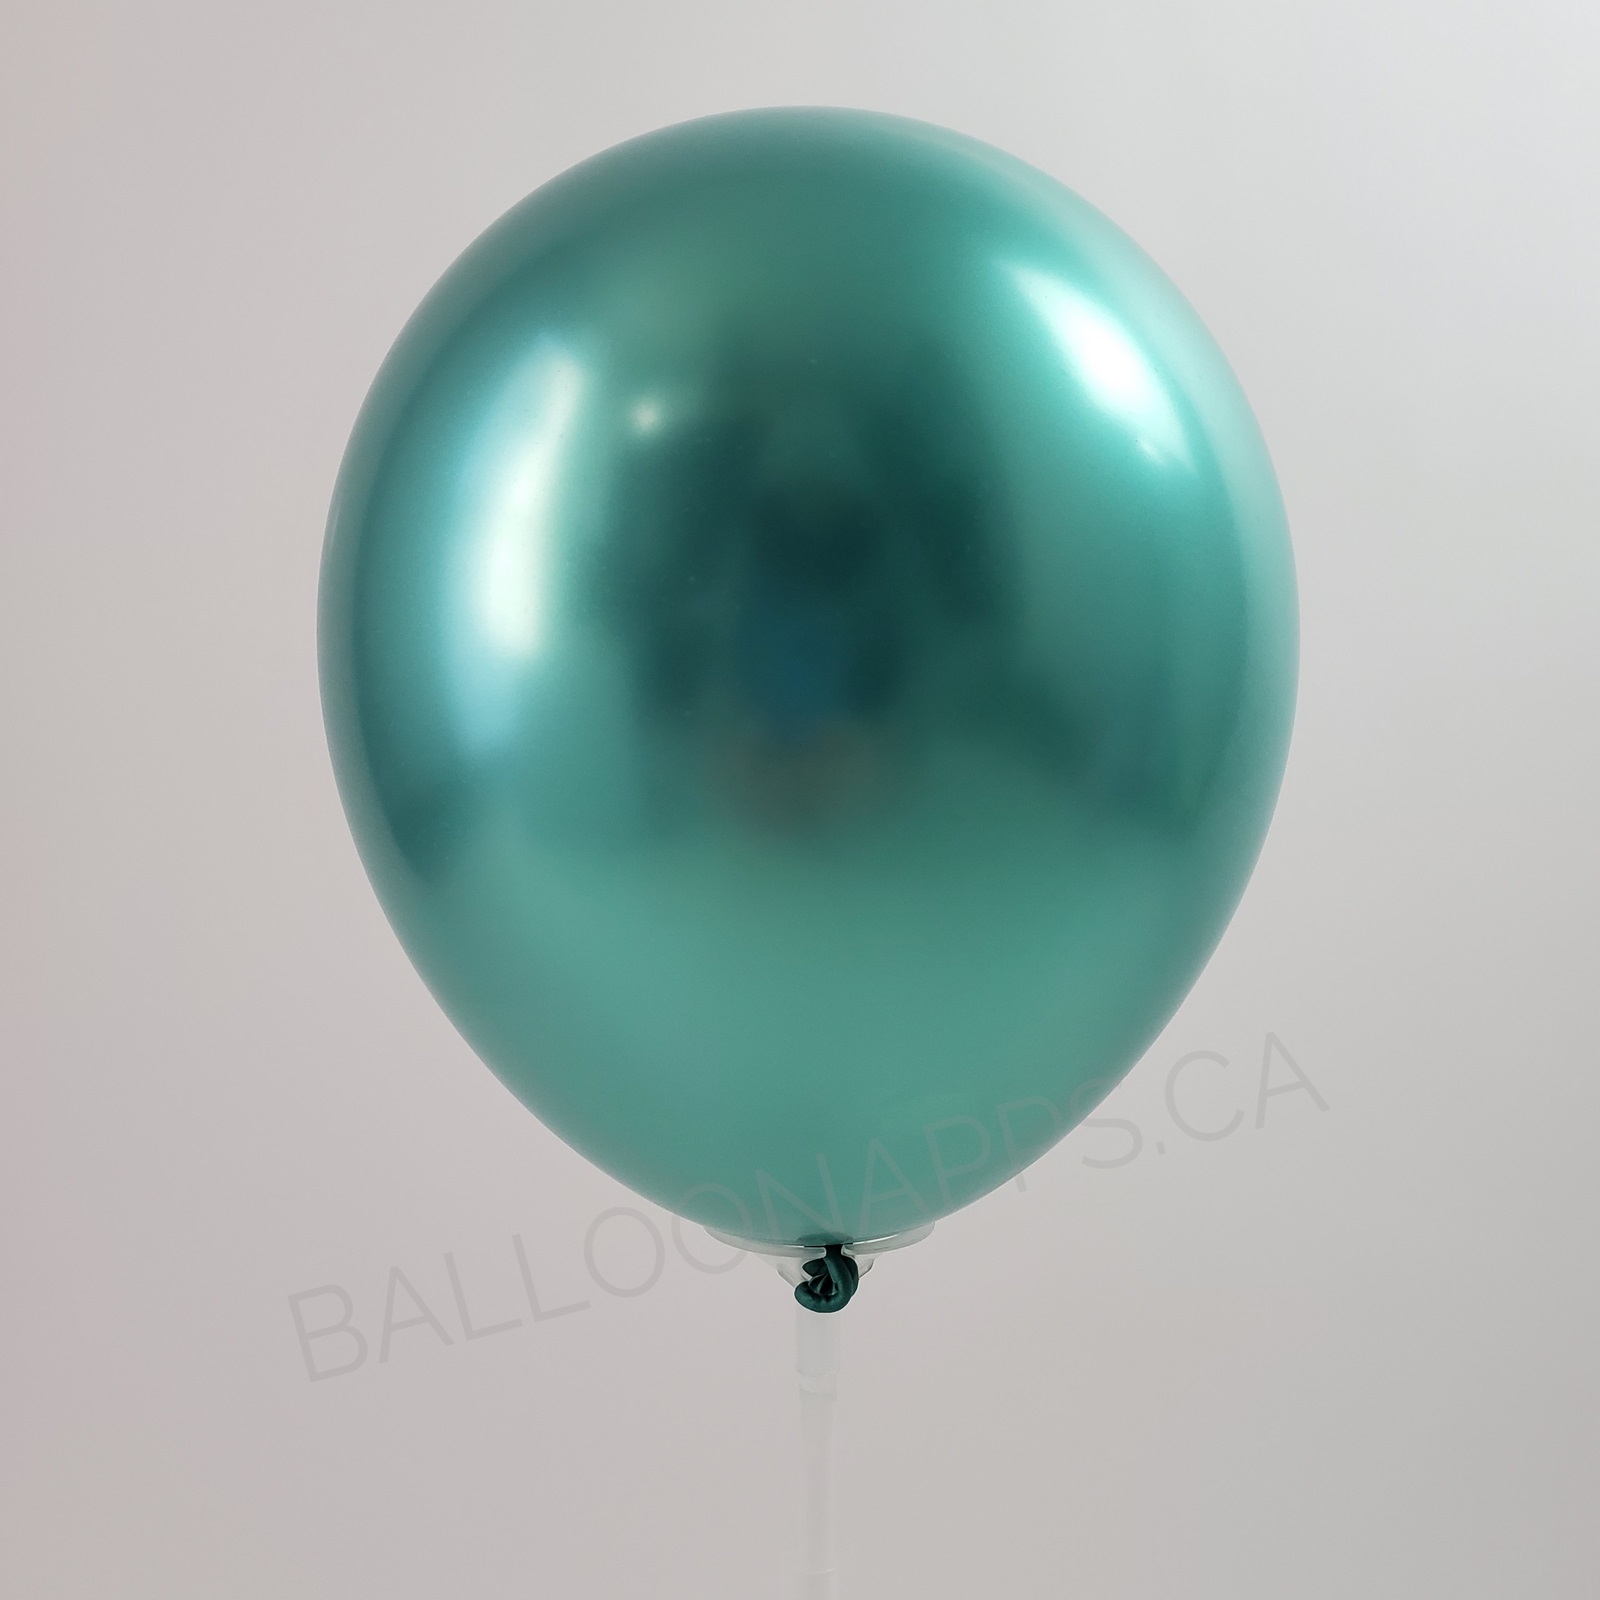 balloon texture Qualatex 260 Chrome Green